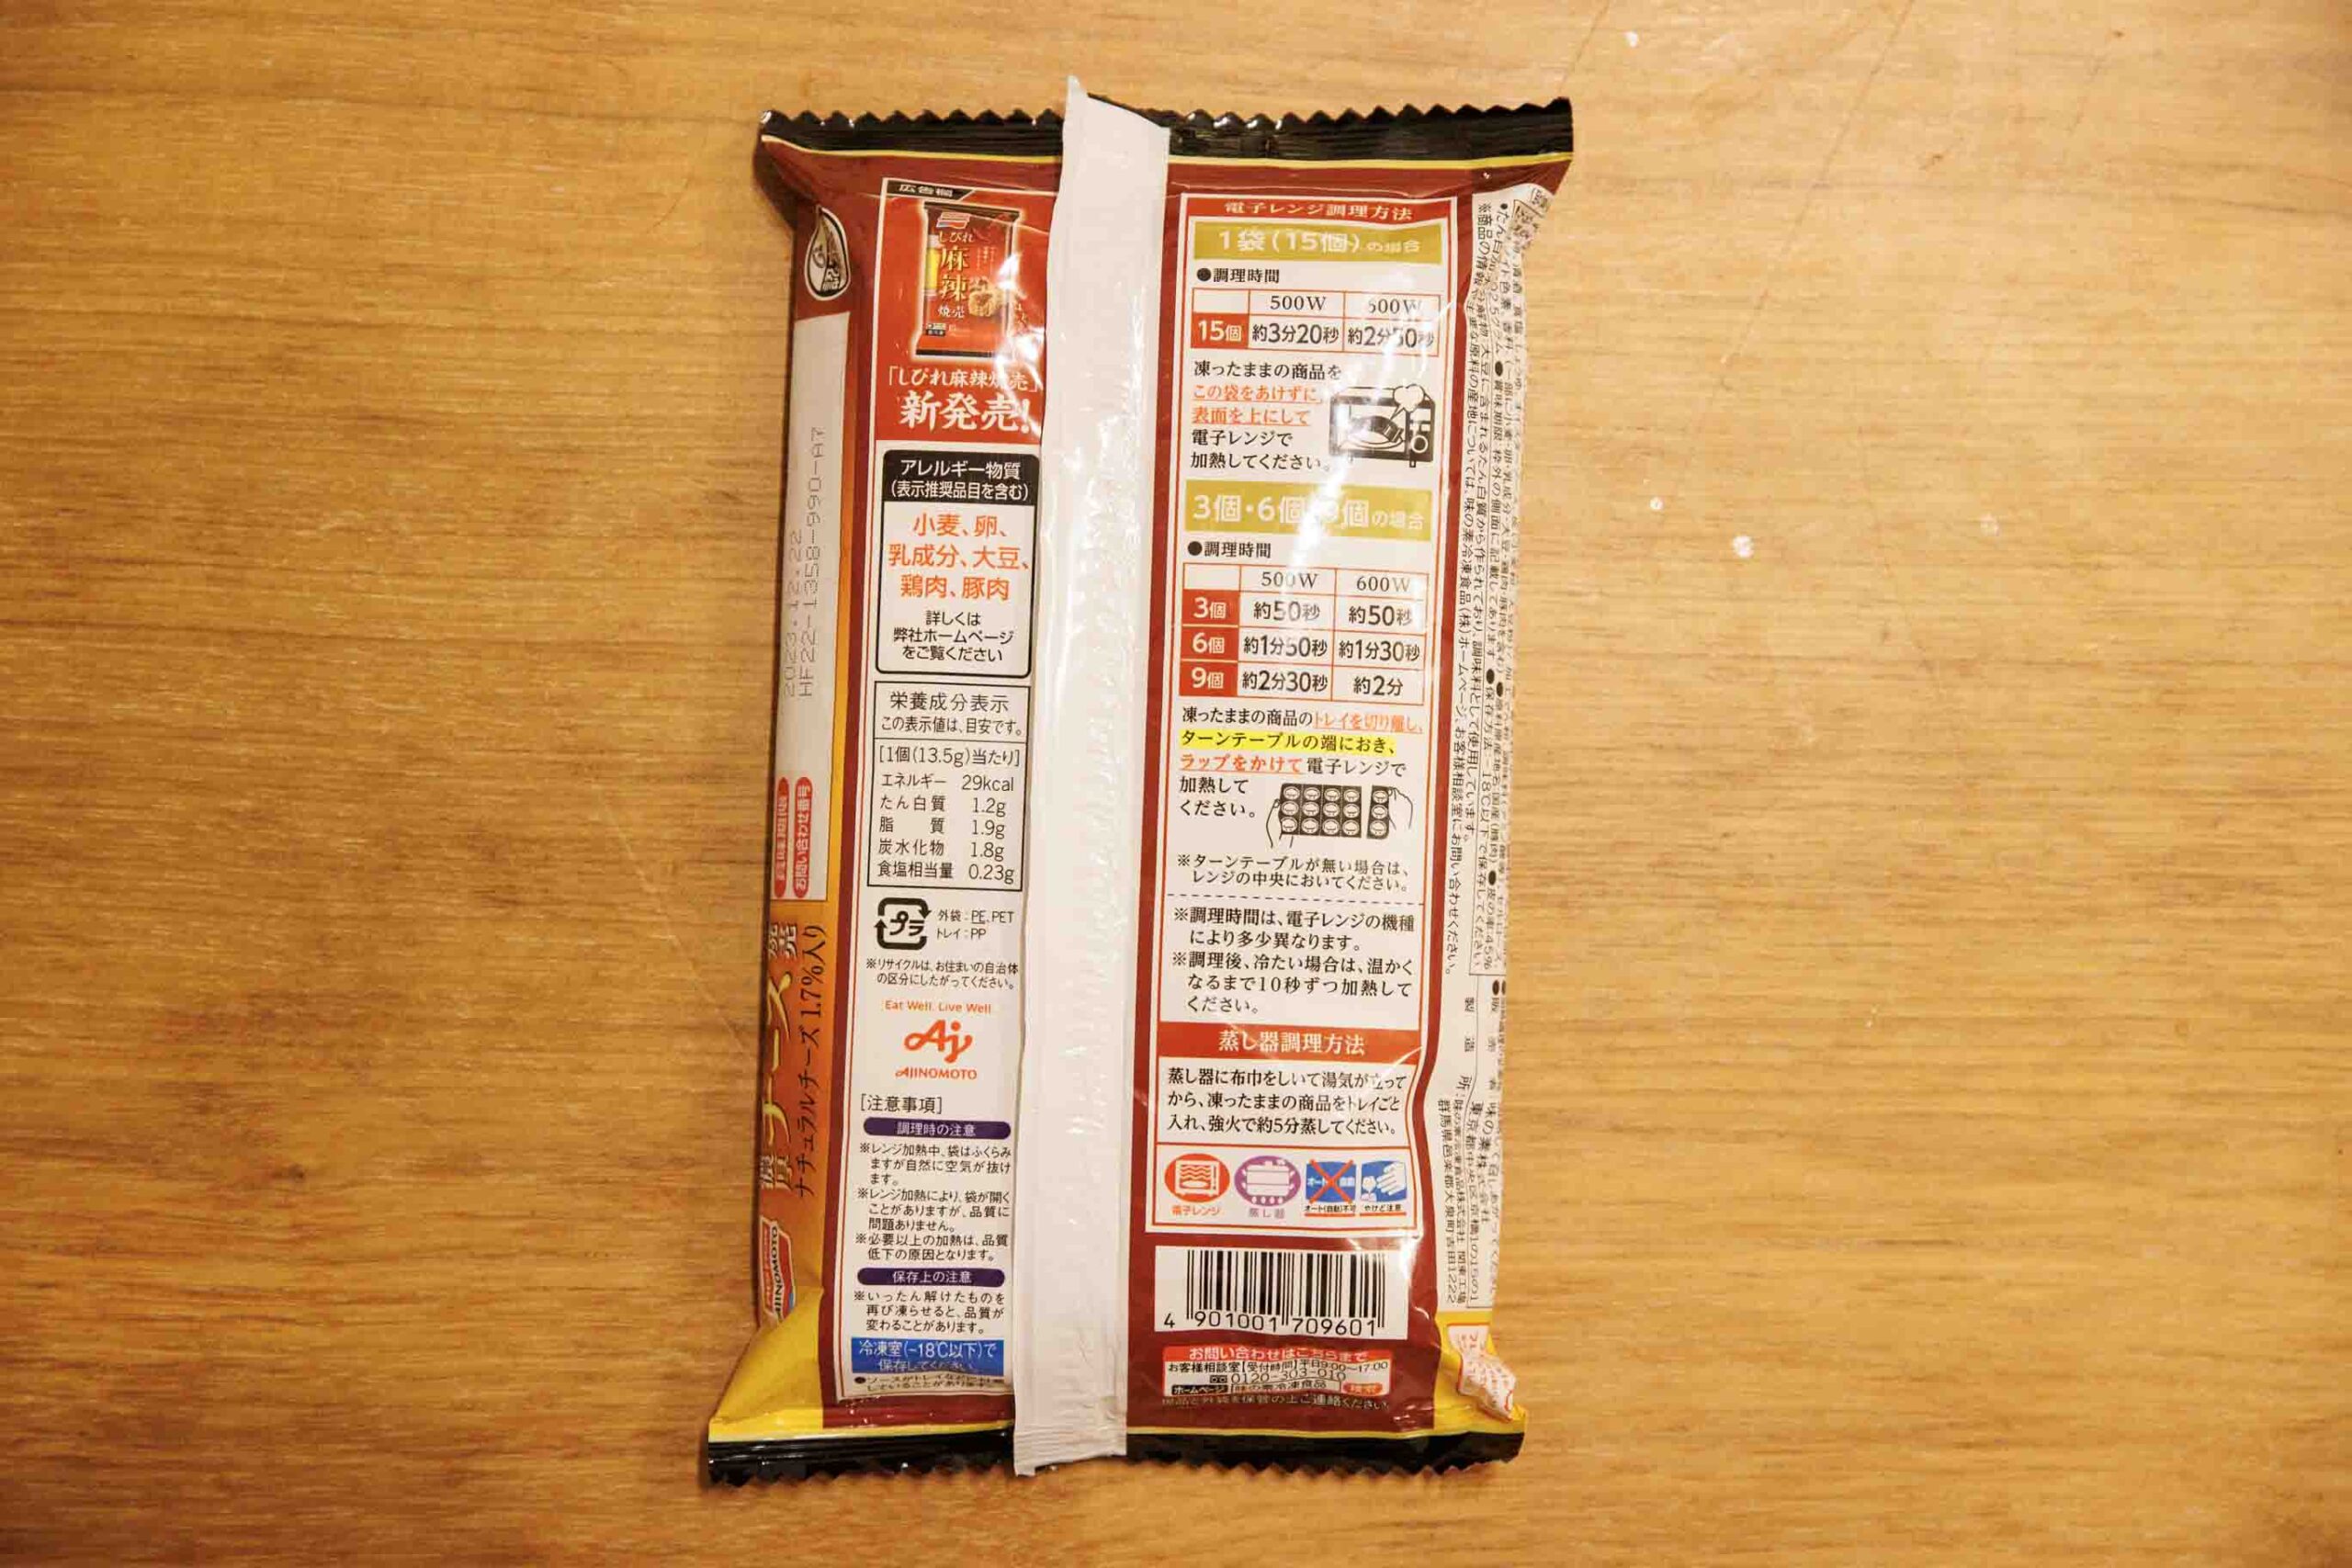 味の素の冷凍食品「濃厚チーズ焼売」のパッケージ裏面の写真